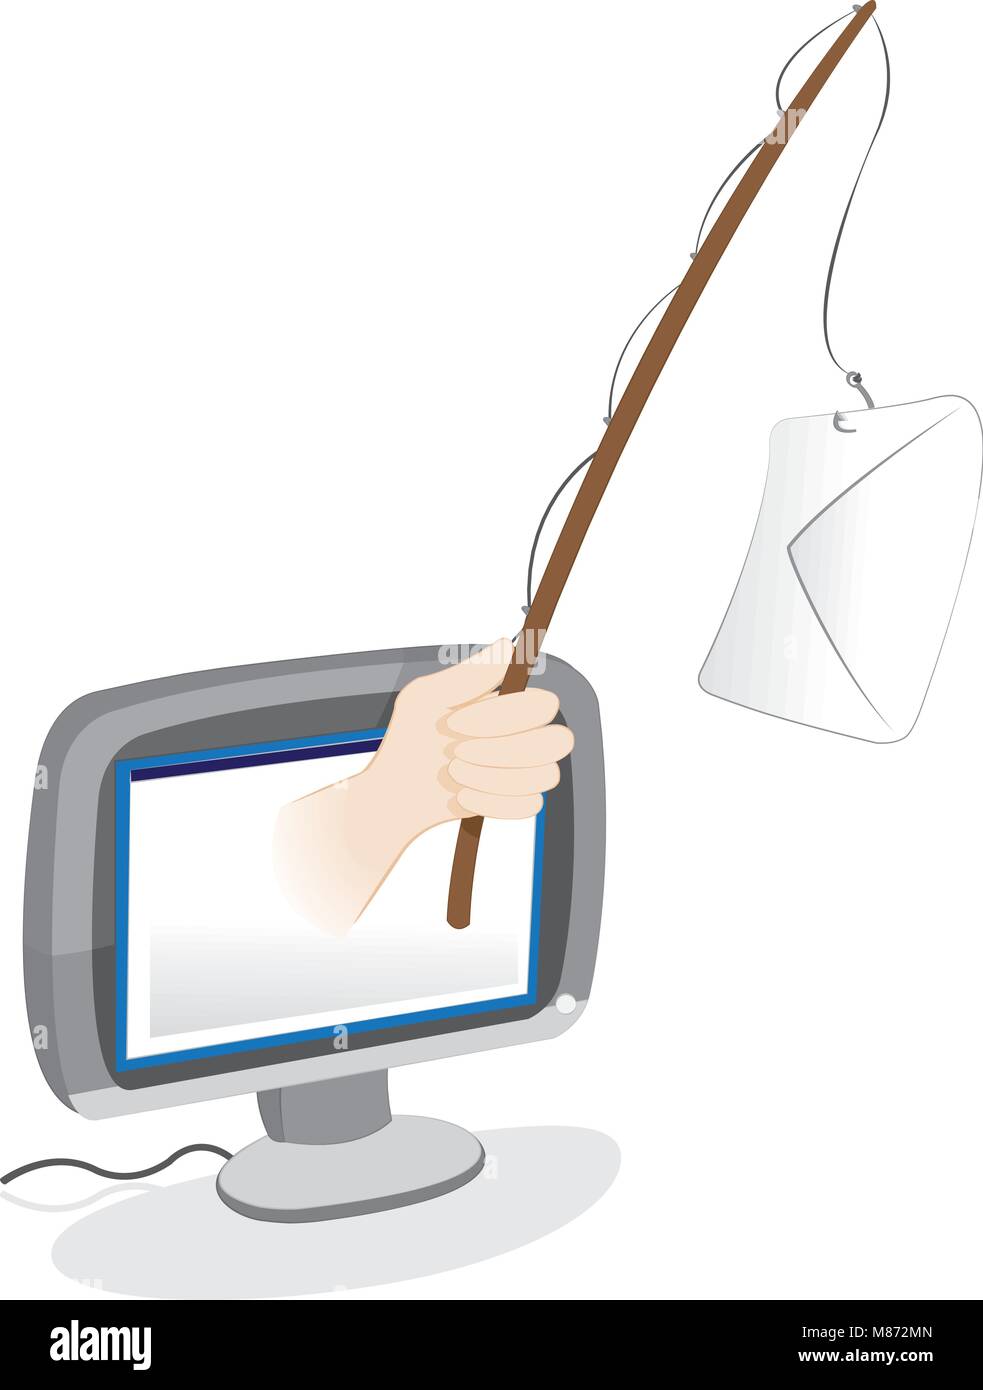 Un vecteur caricature représentant une main humaine éclater d'un moniteur pc et le maintien d'un phishing en bois dotée d'une lettre fermée pendaison comme un appât. Spa Illustration de Vecteur